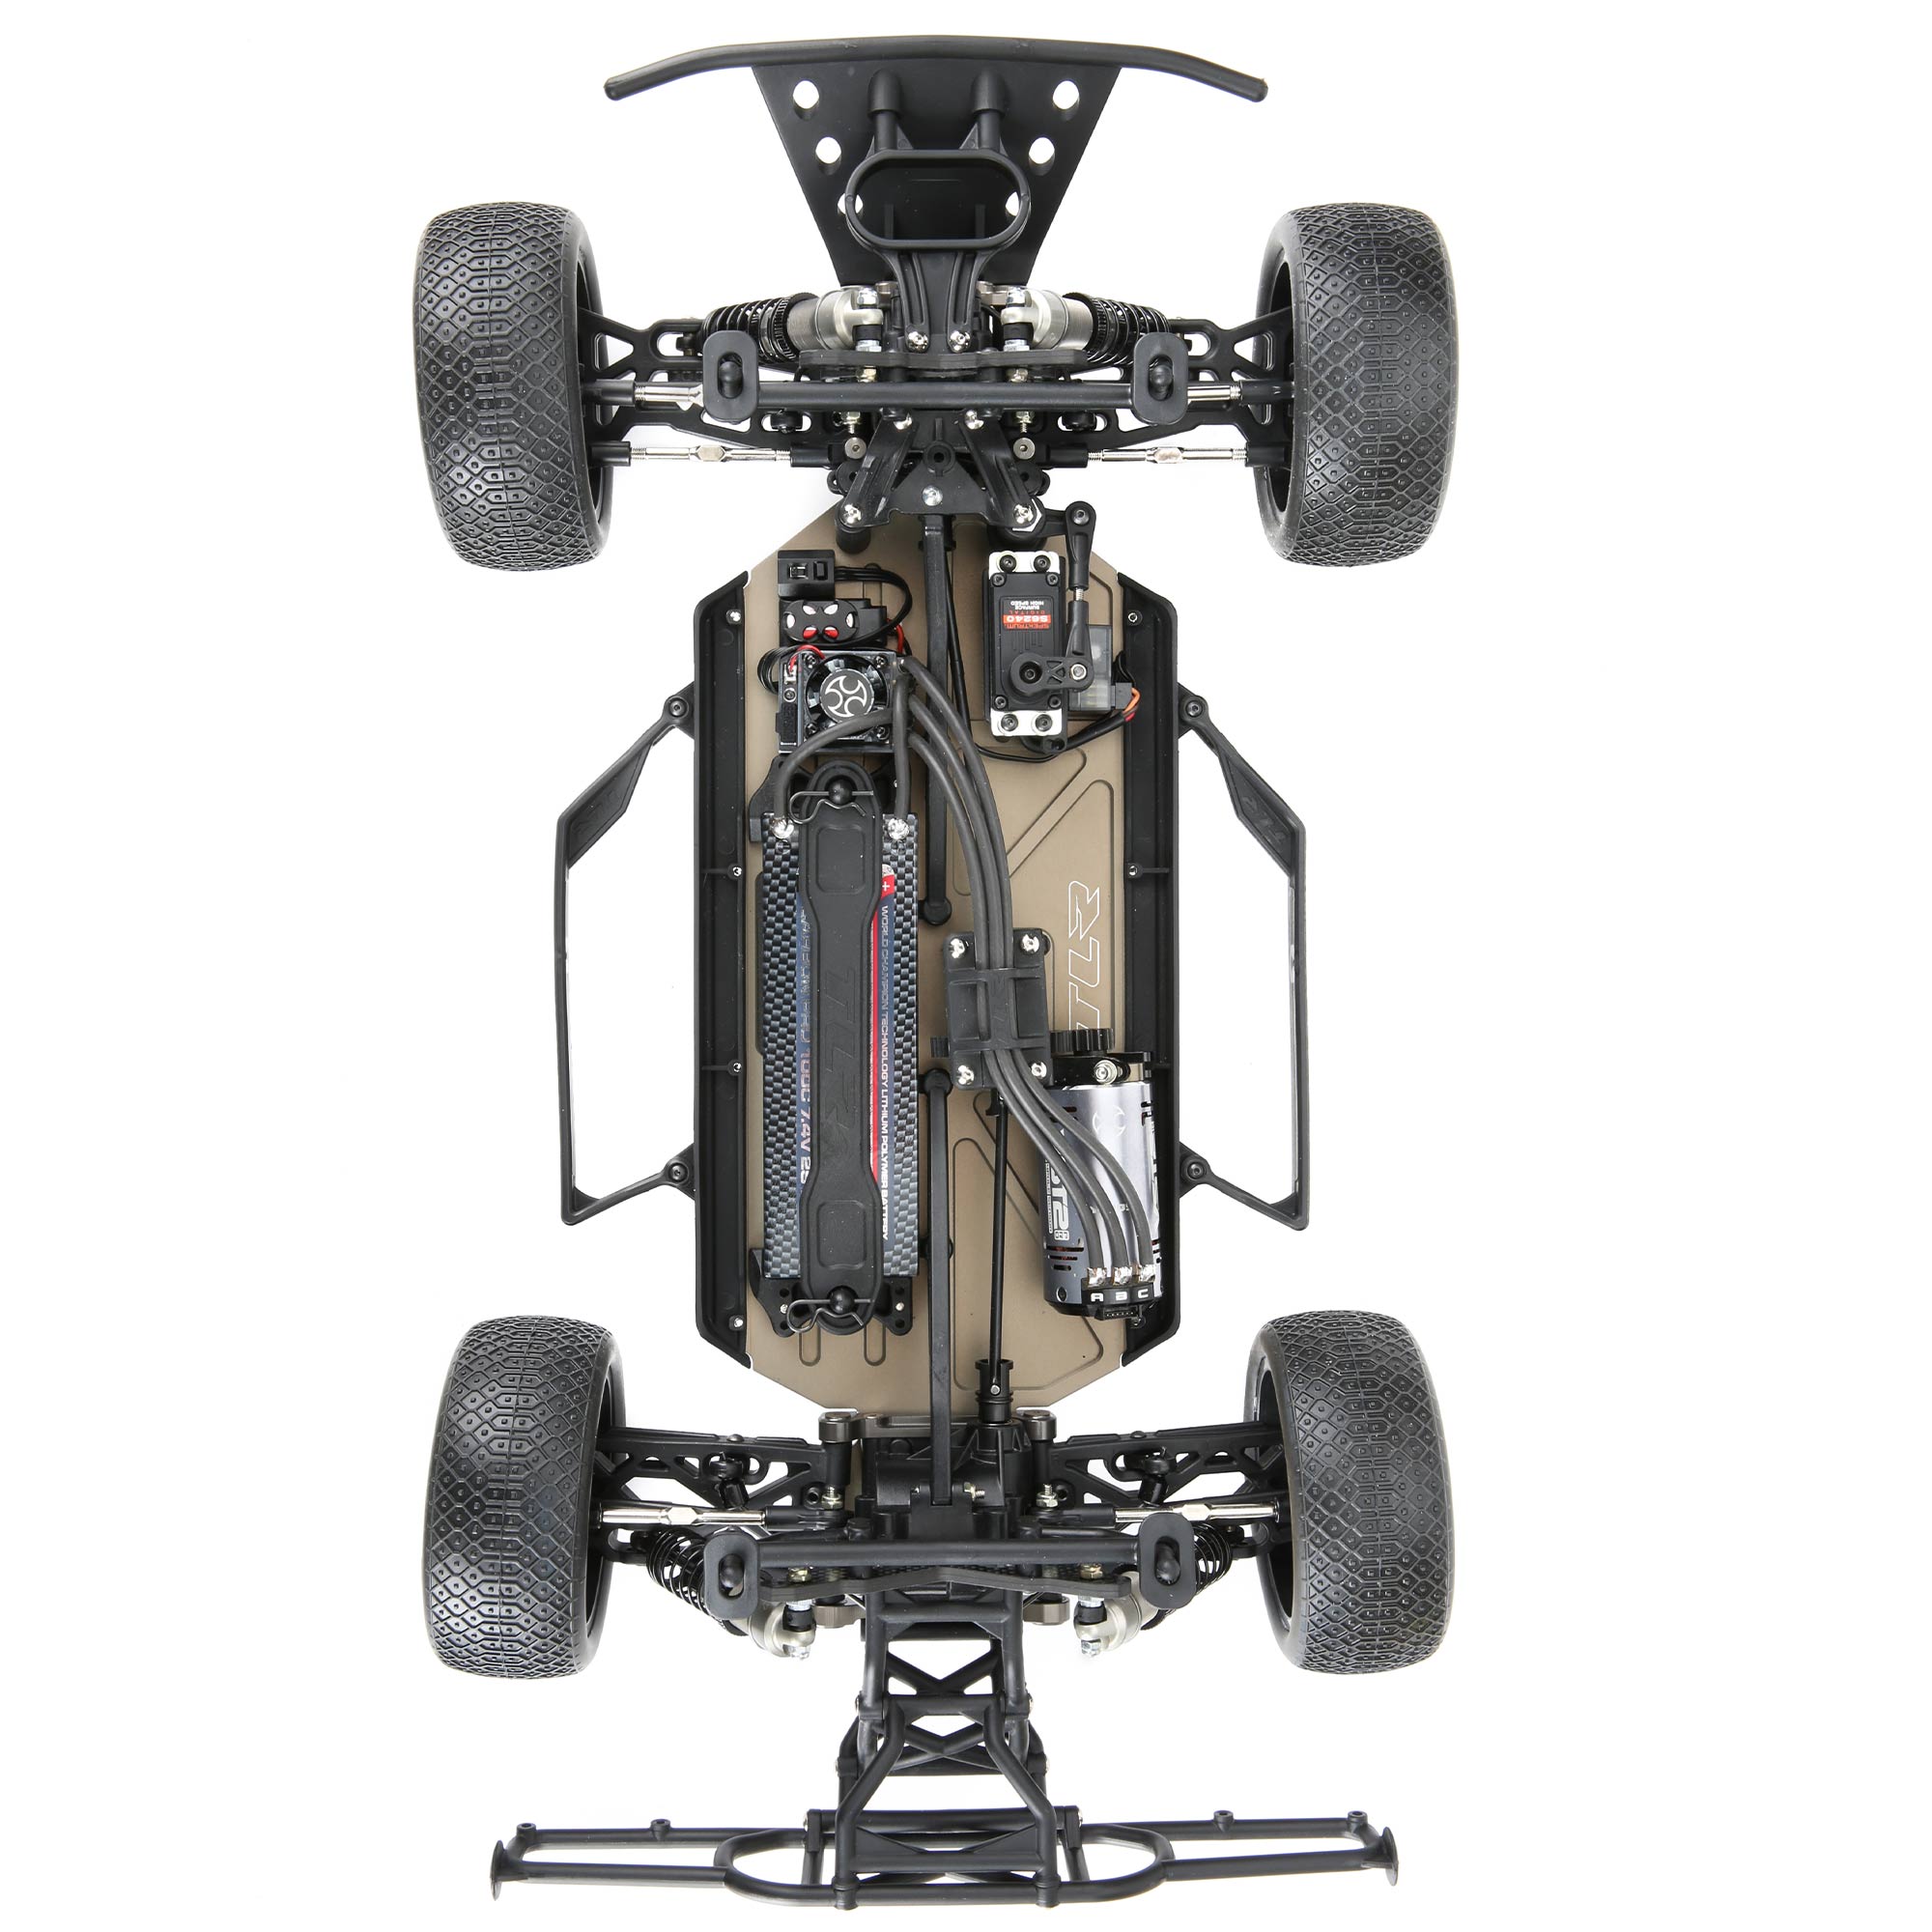 1/10 TEN-SCTE 3.0 4WD SCT Race Kit